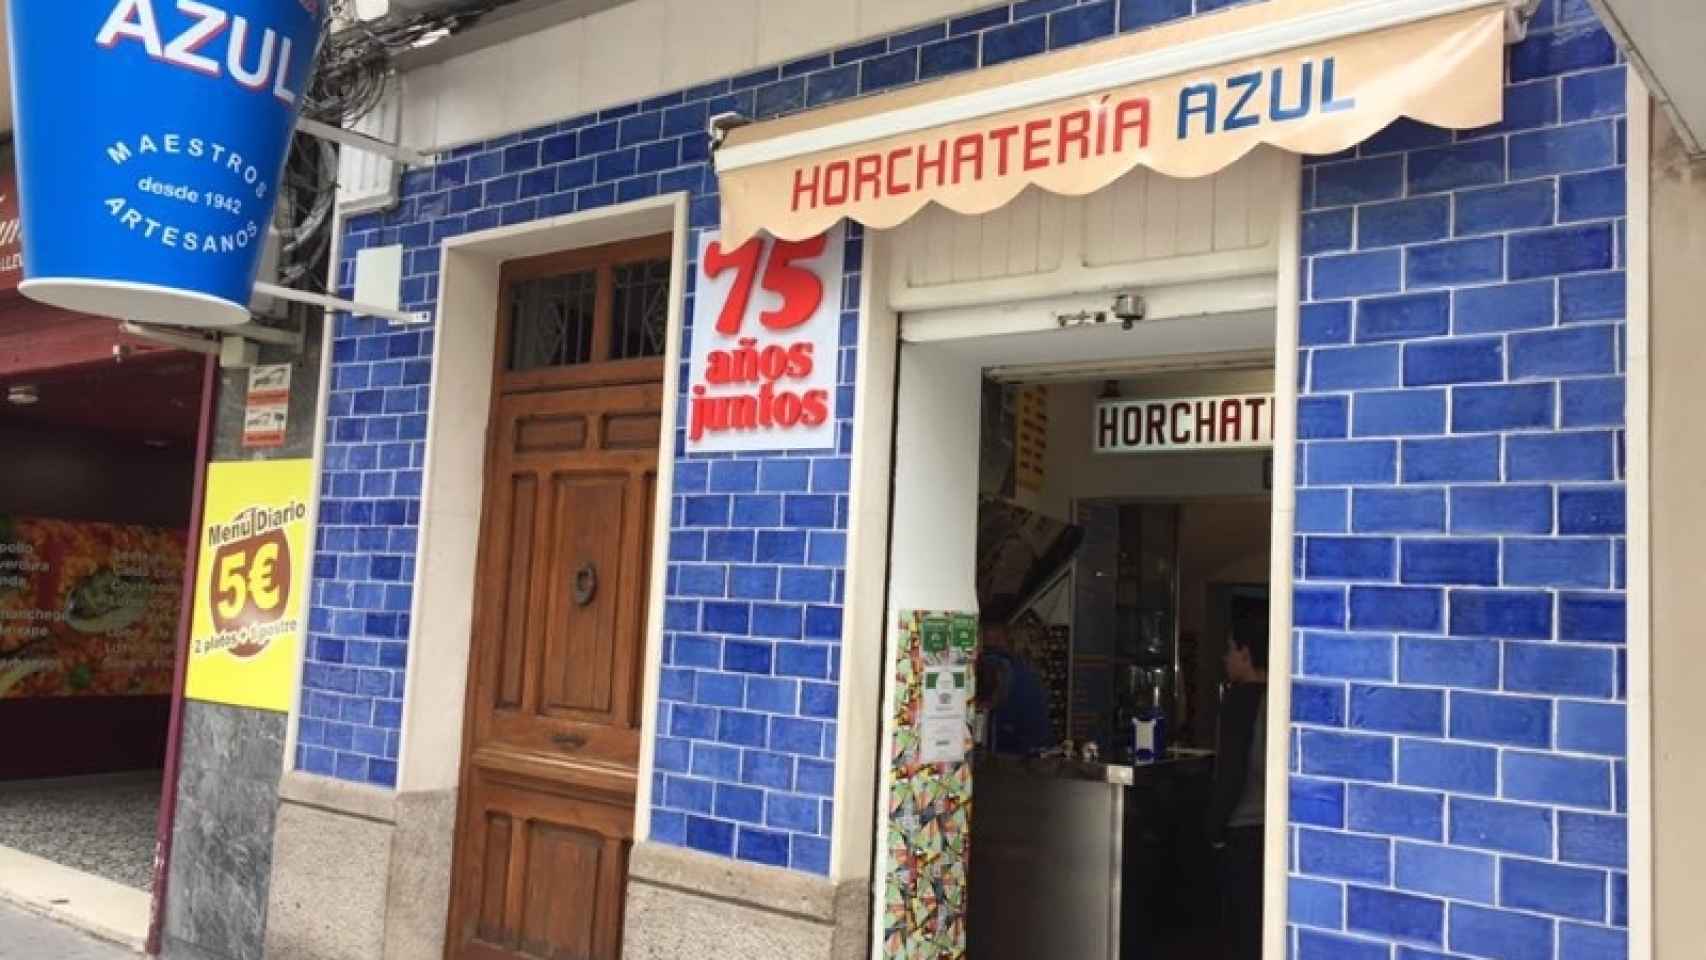 Foto: Horchatería Azul